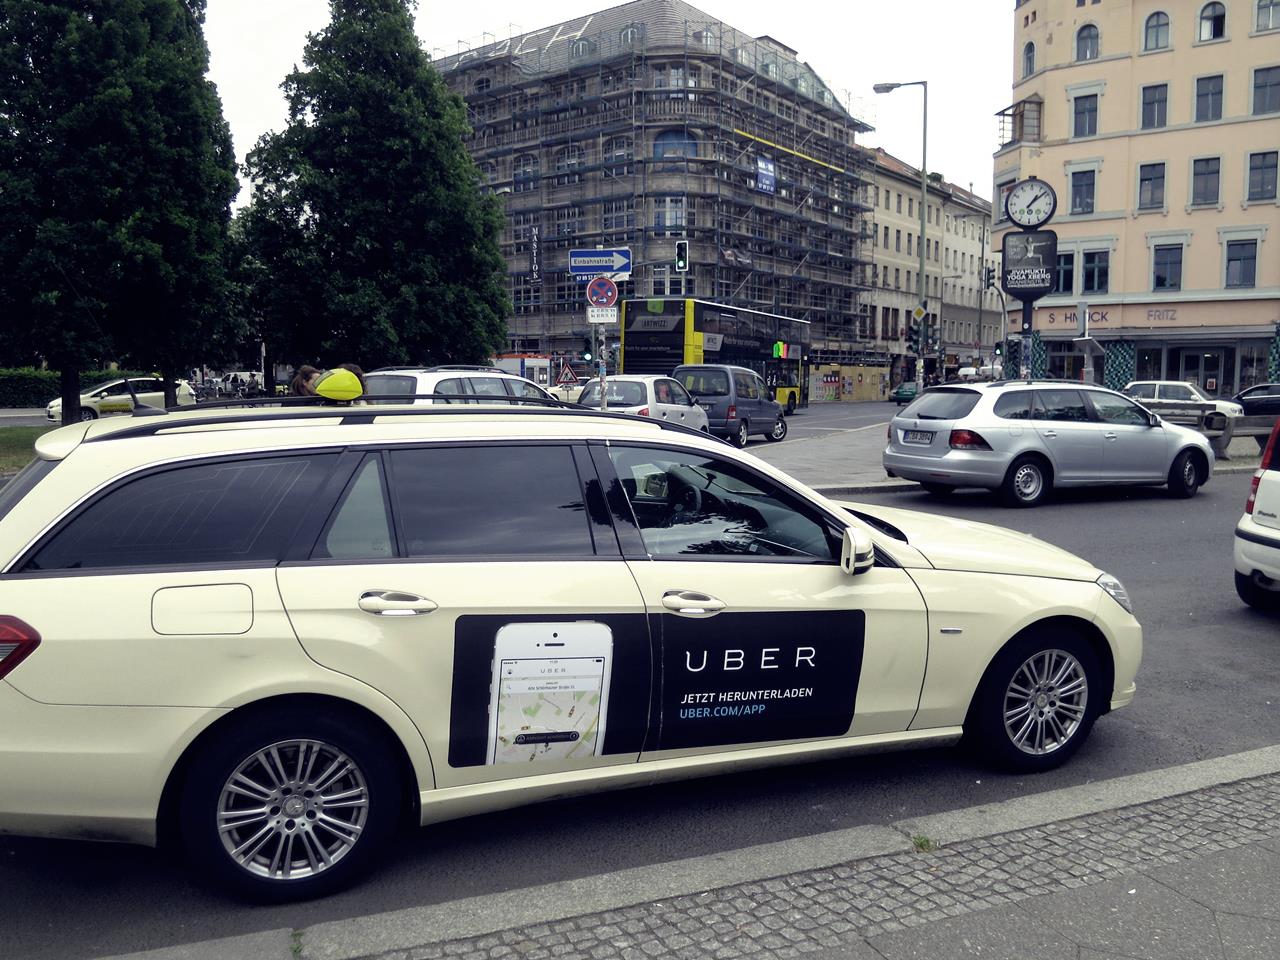 Reclama pentru Uber lipită pe un taxi